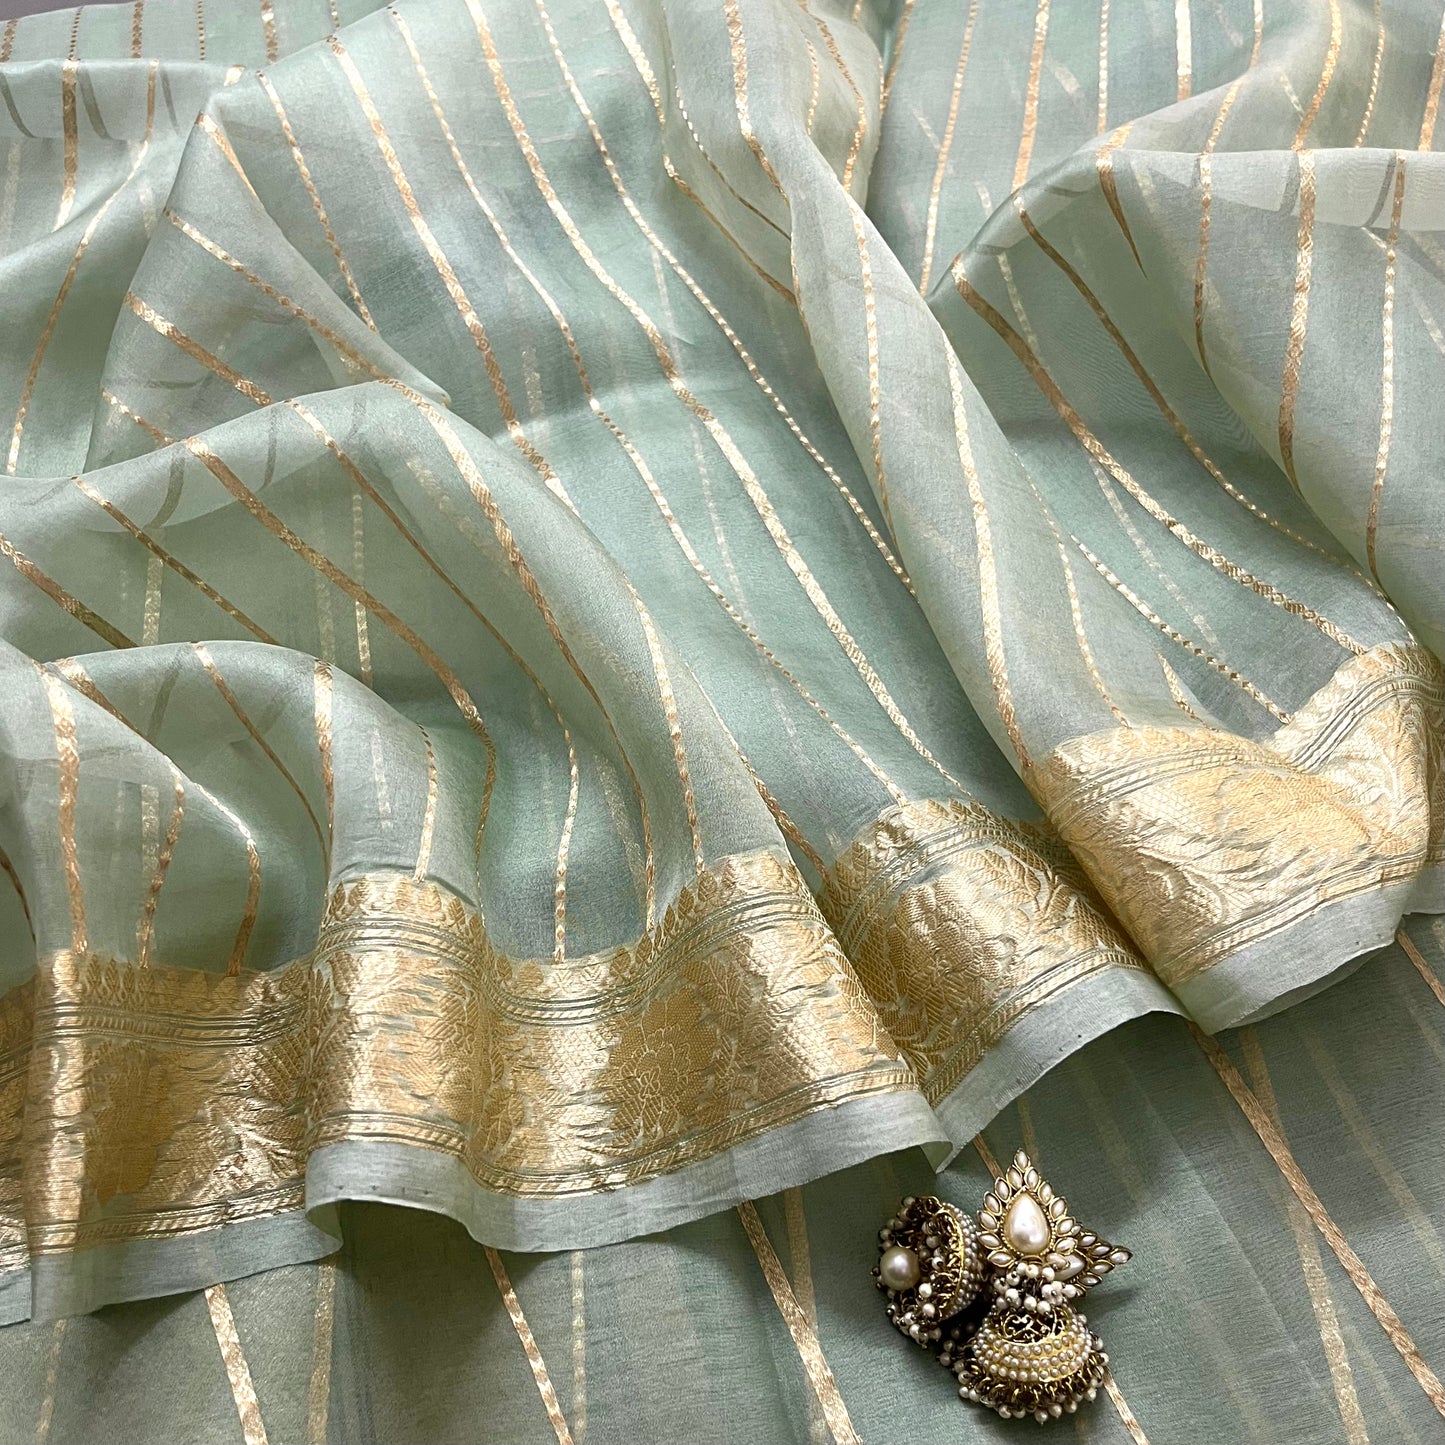 Sage green banarasi saree with zari stripes all over